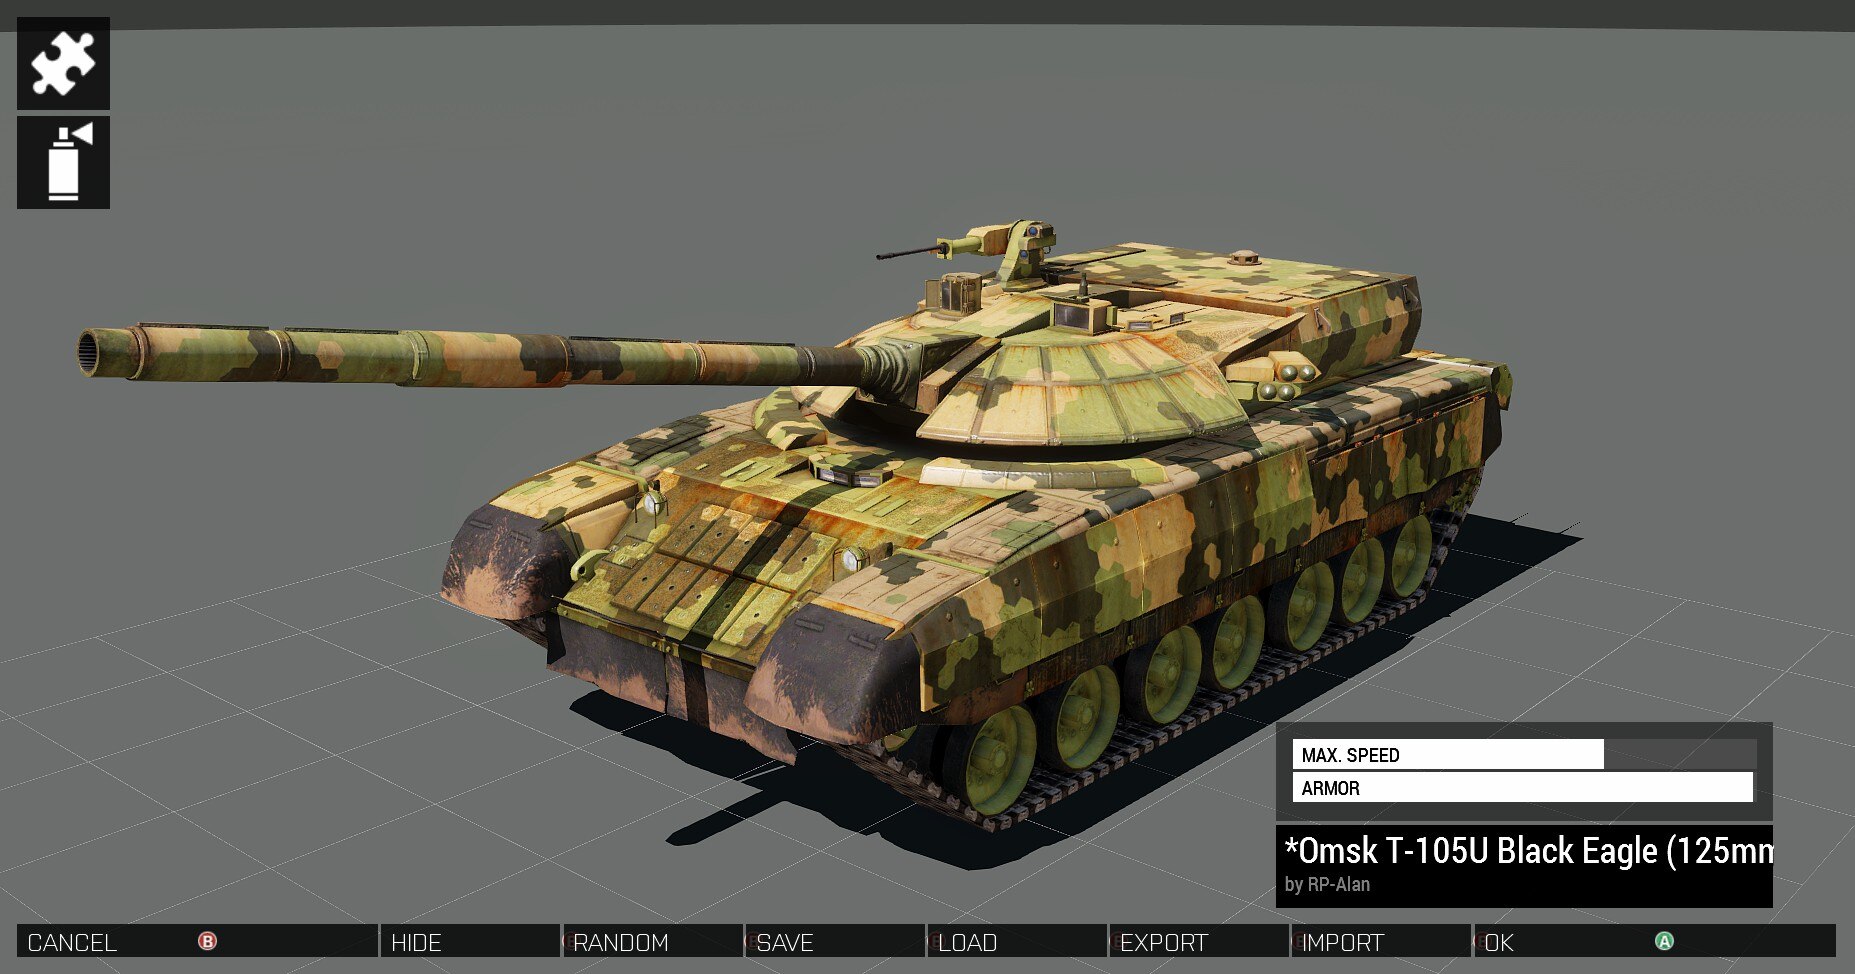 Arma 3 Tanks on Steam